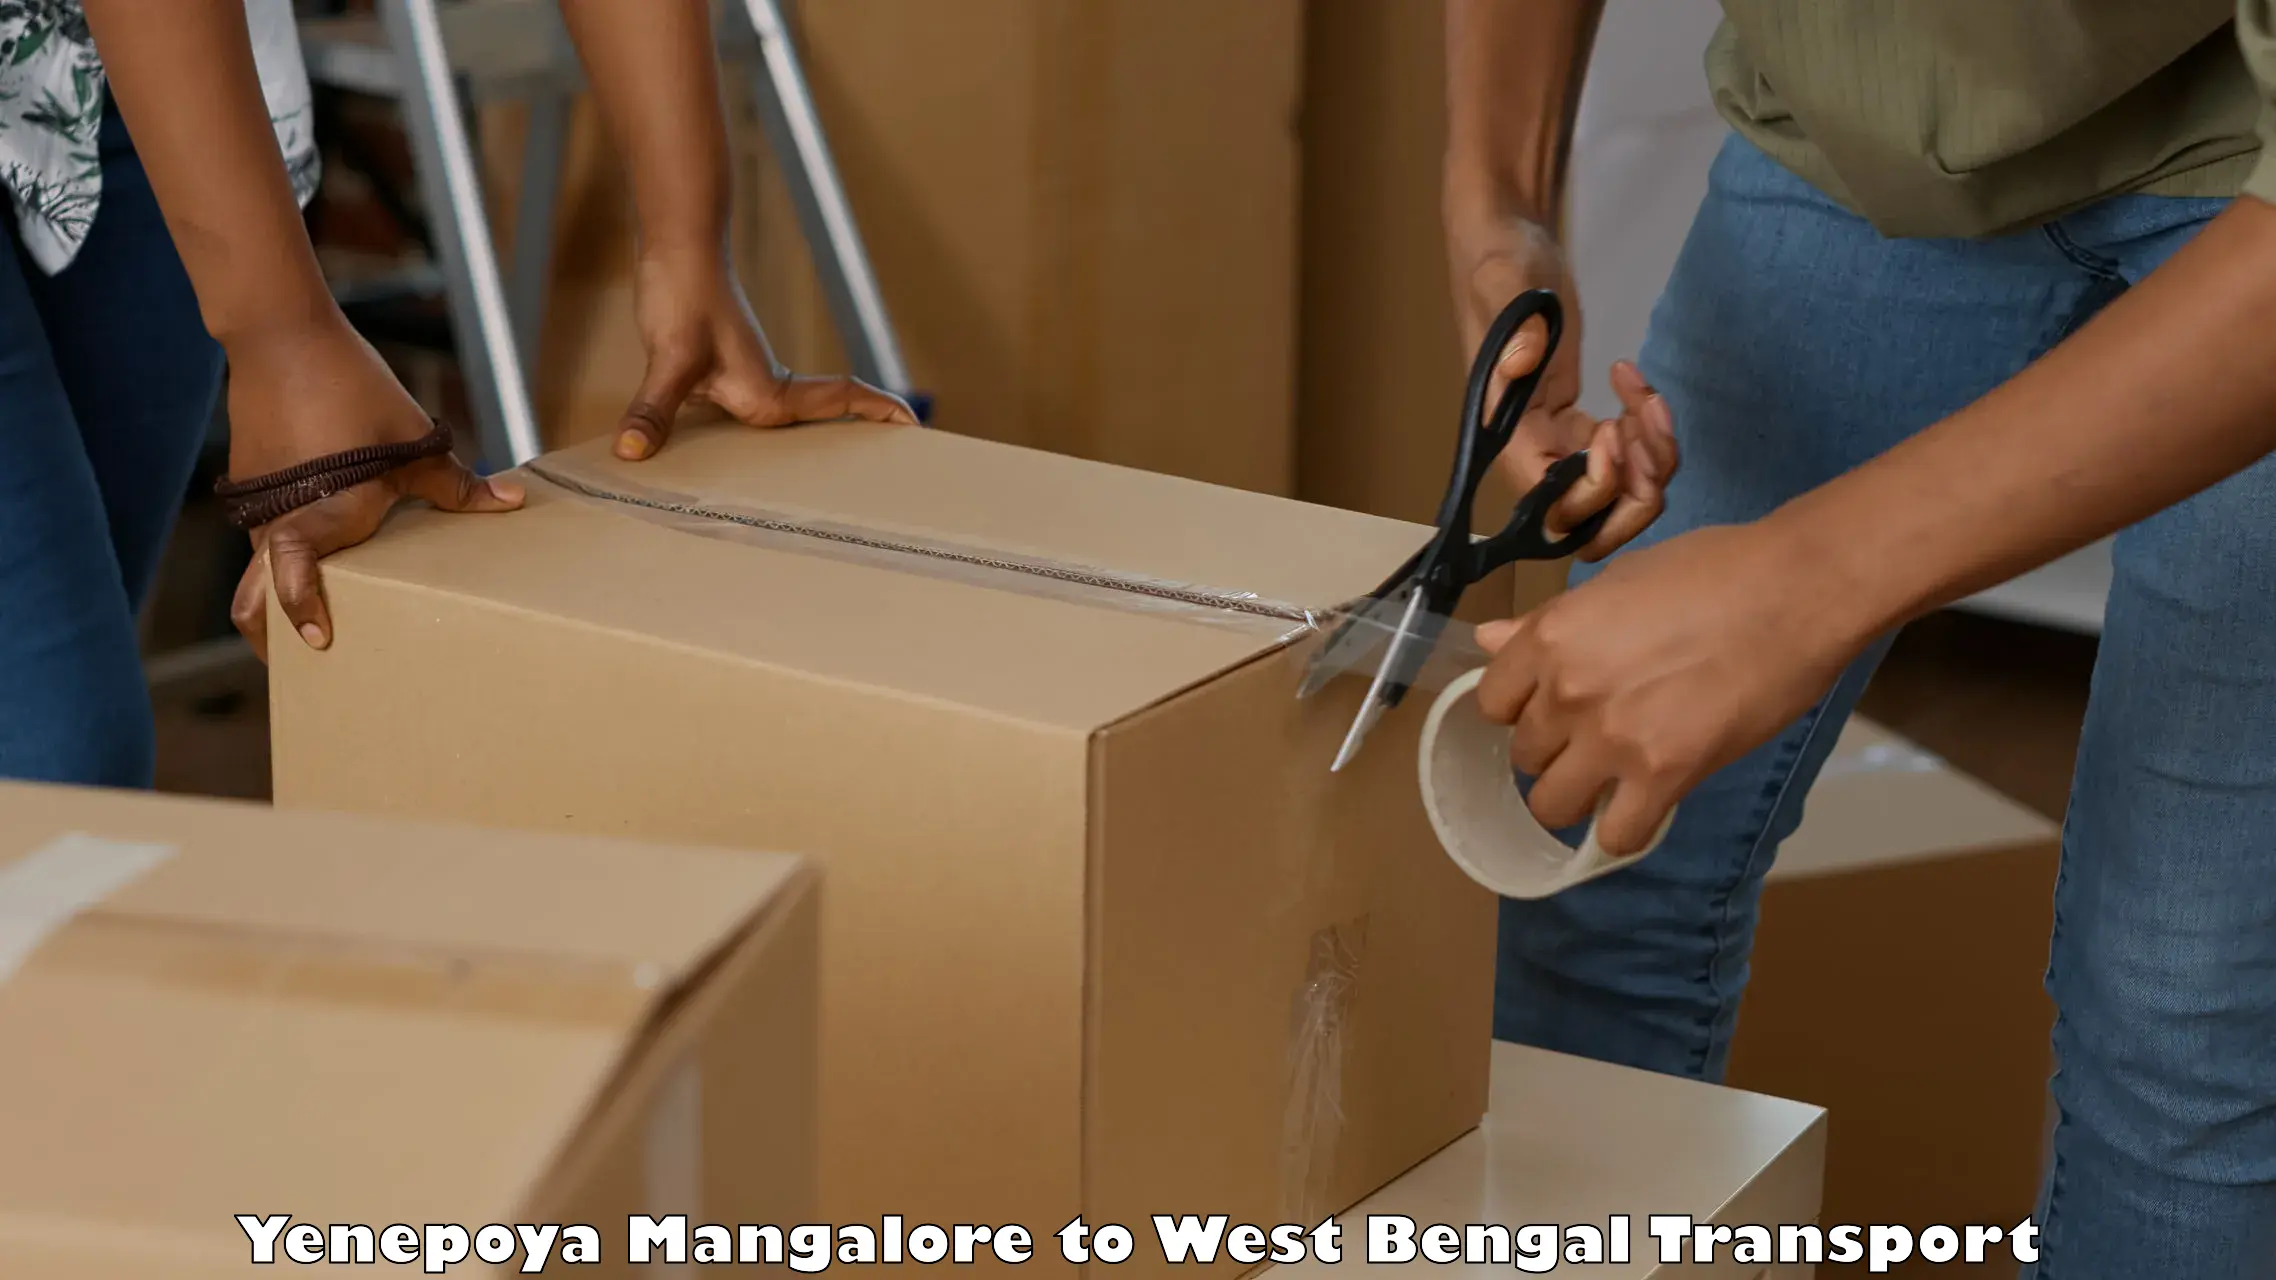 All India transport service Yenepoya Mangalore to West Bengal